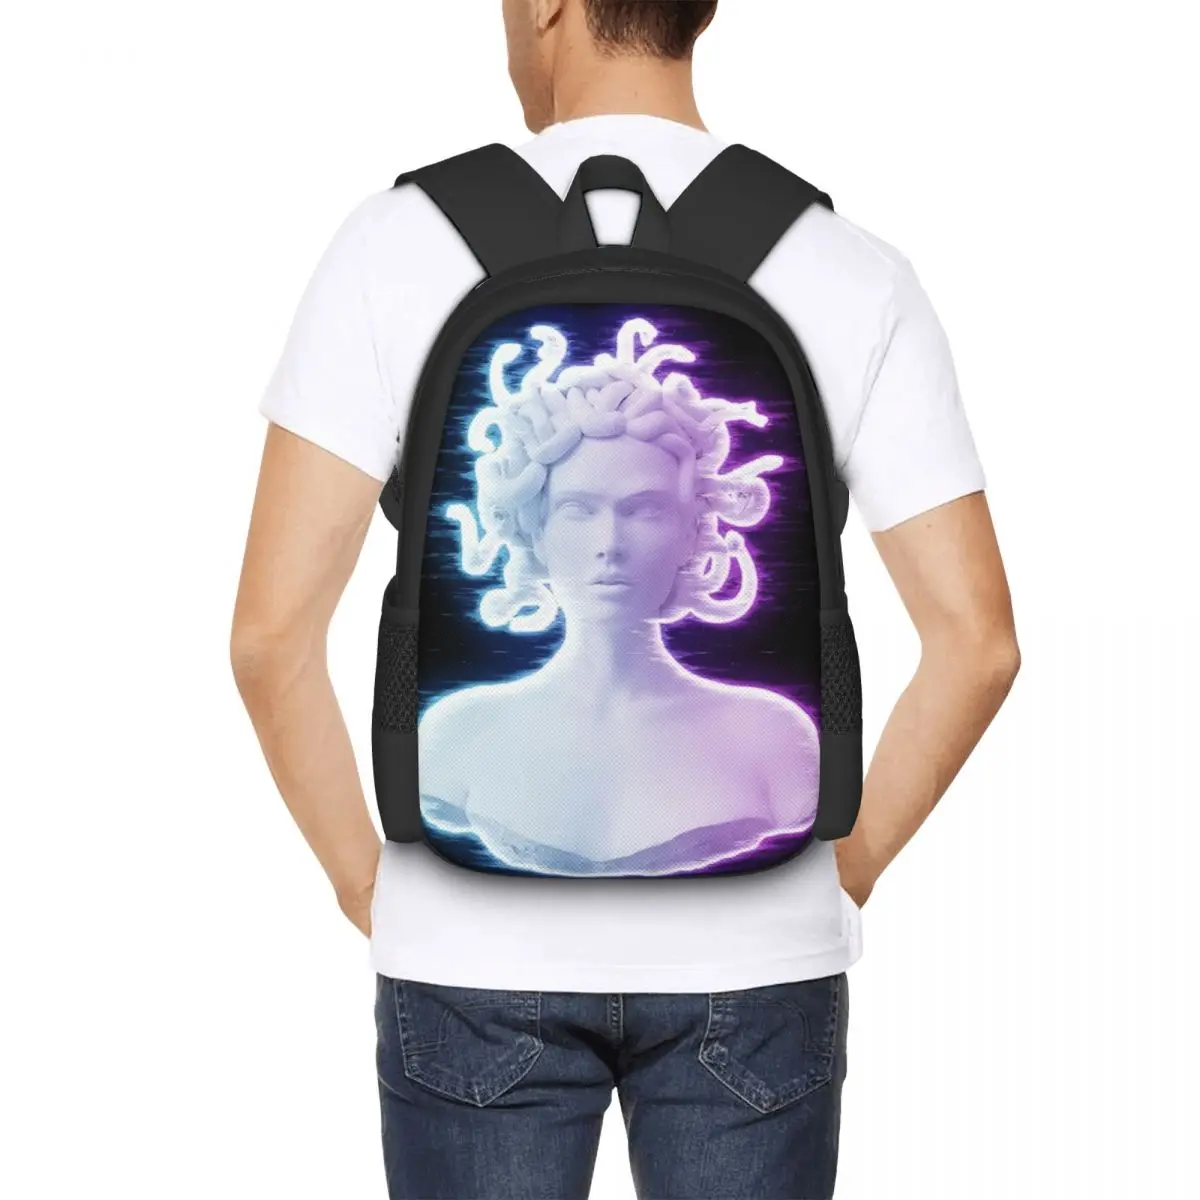 Medusa Hologram Backpack for Girls Boys Travel RucksackBackpacks for Teenage school bag